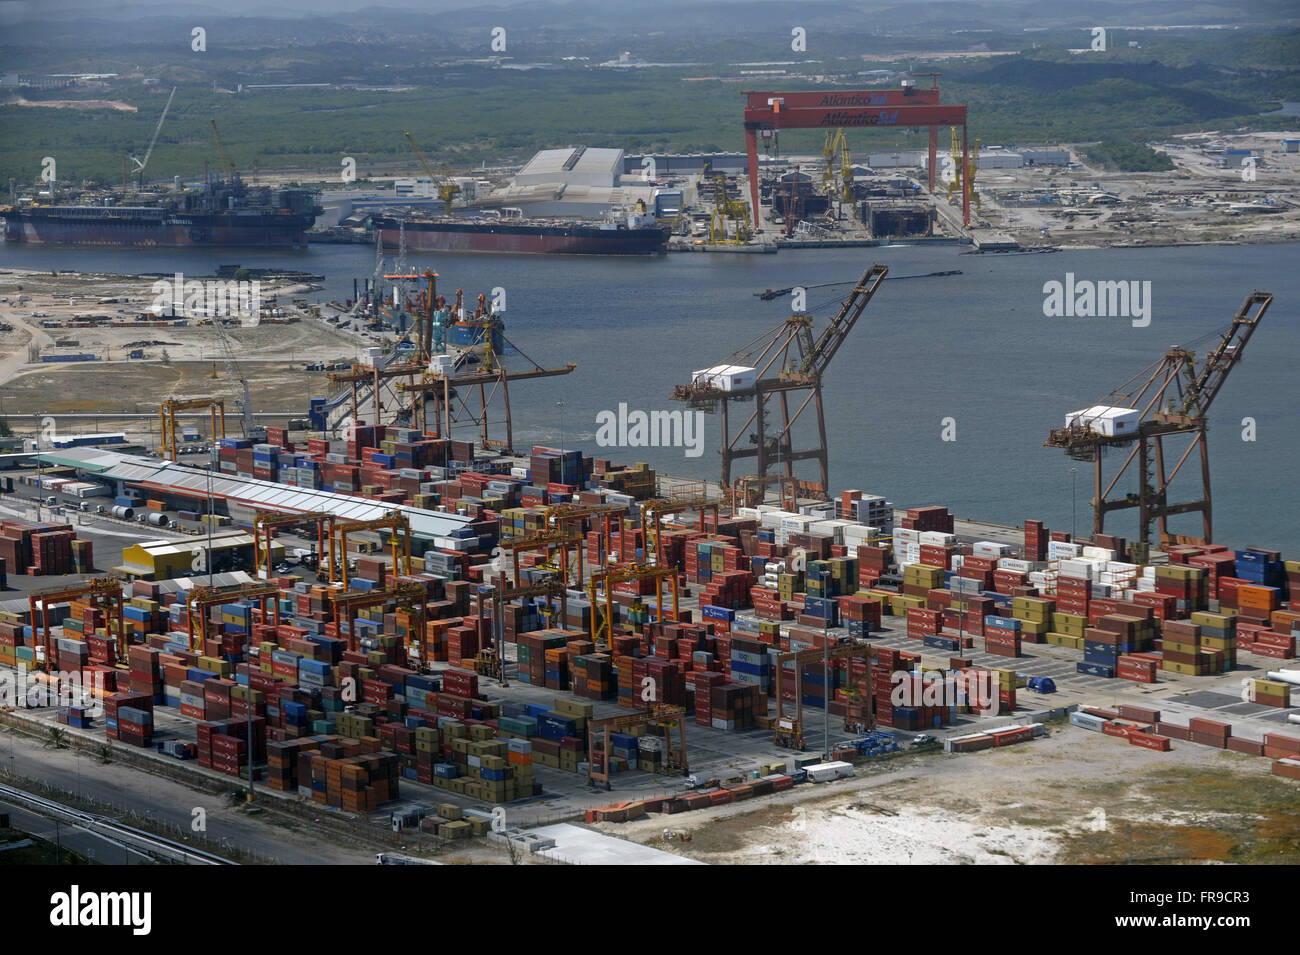 Aerial view of Port of Suape Incidental Atlantico Sul Shipyard Stock Photo